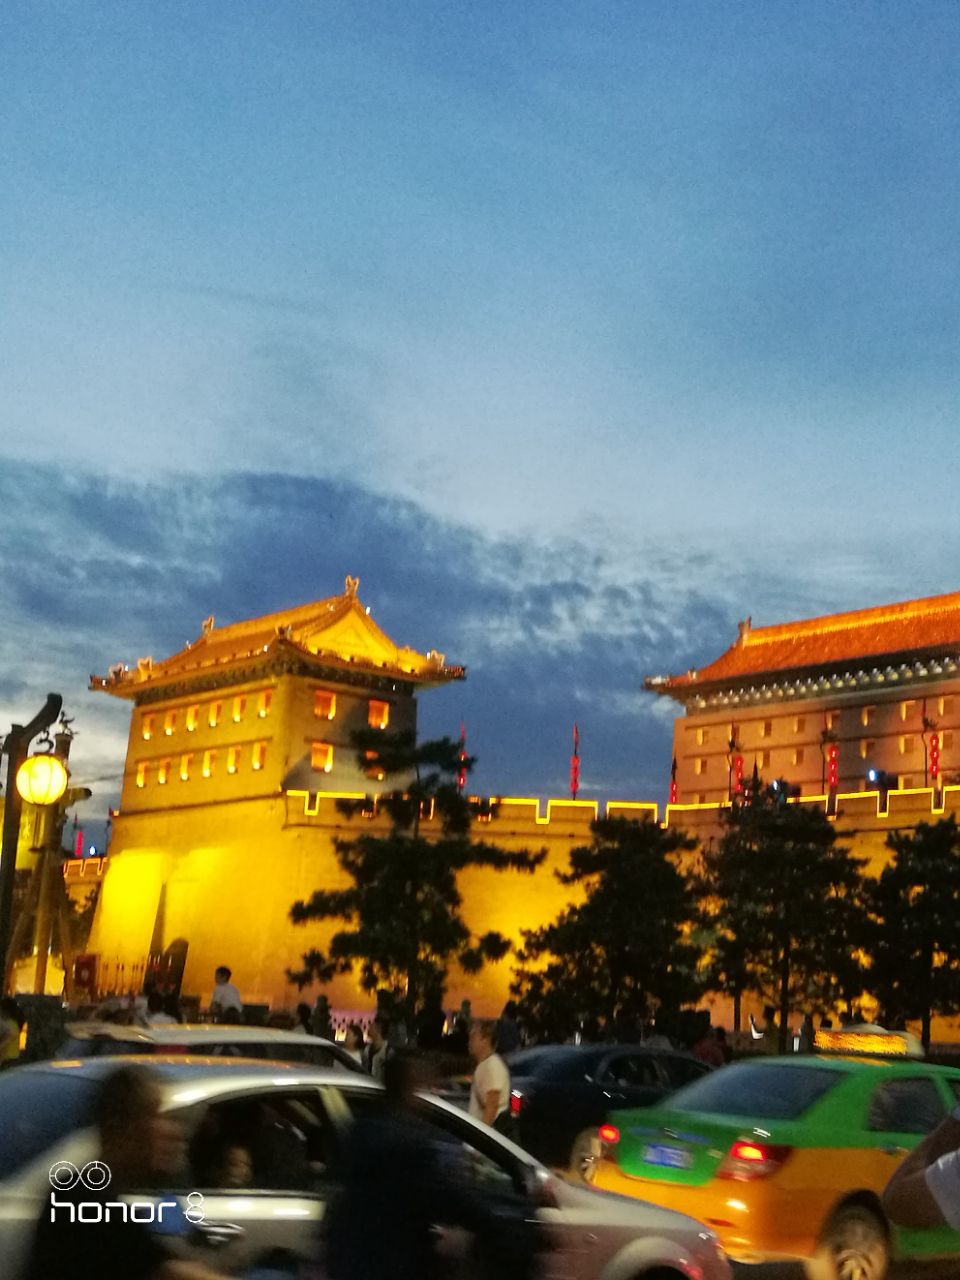 且以恢弘壮丽而著称汉长安城遗址以西安古城墙为主在夜色中尽显其庄严